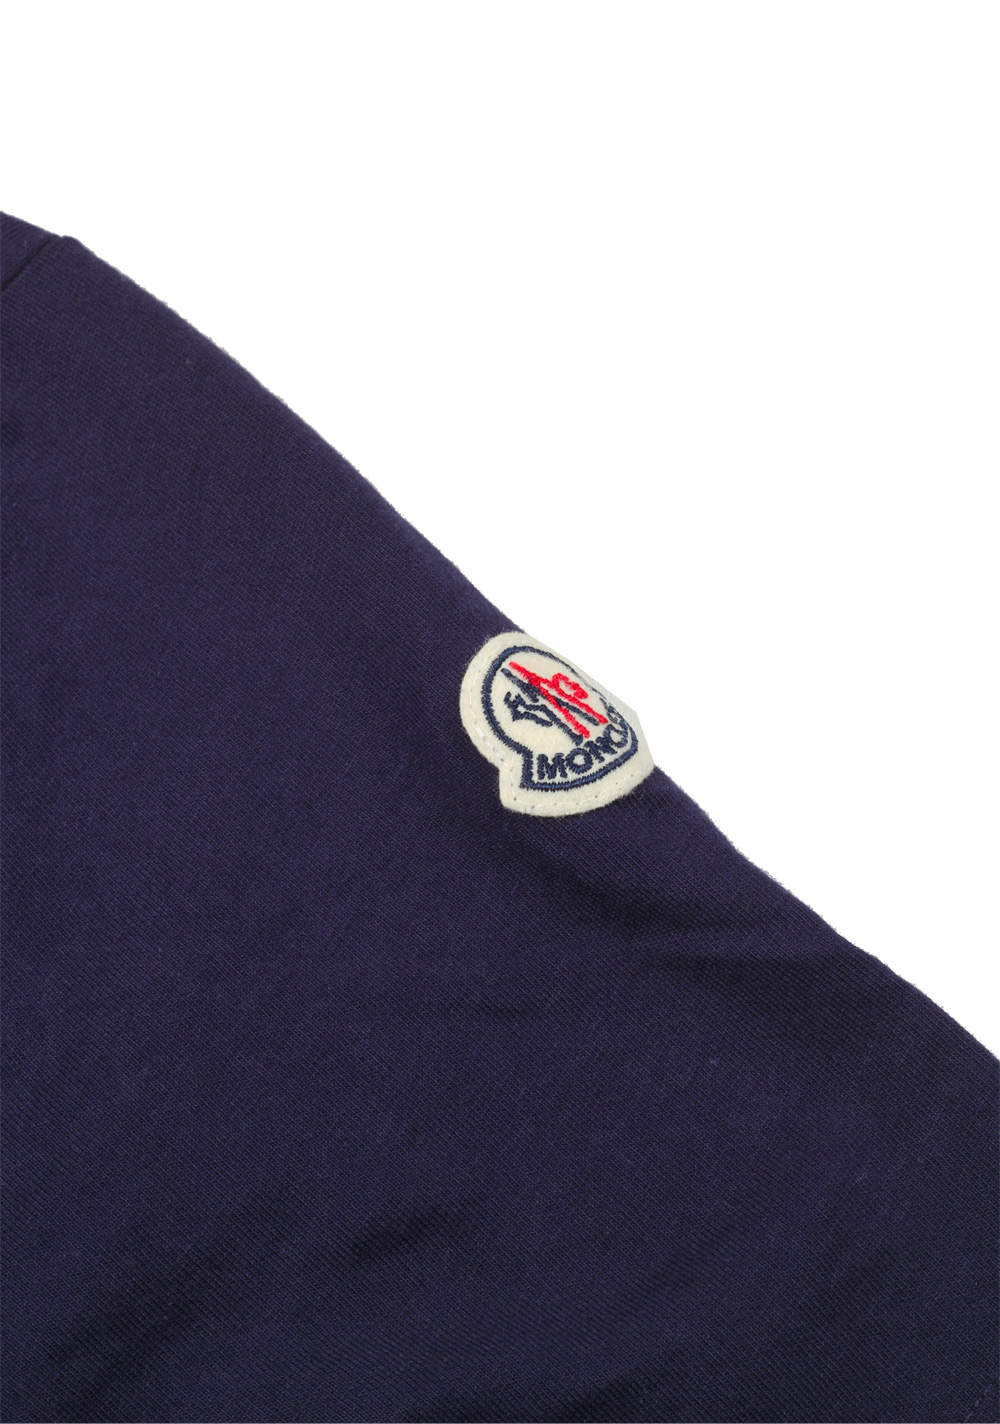 Moncler Navy Crew Neck Tee Shirt Size S / 36R U.S. | Costume Limité